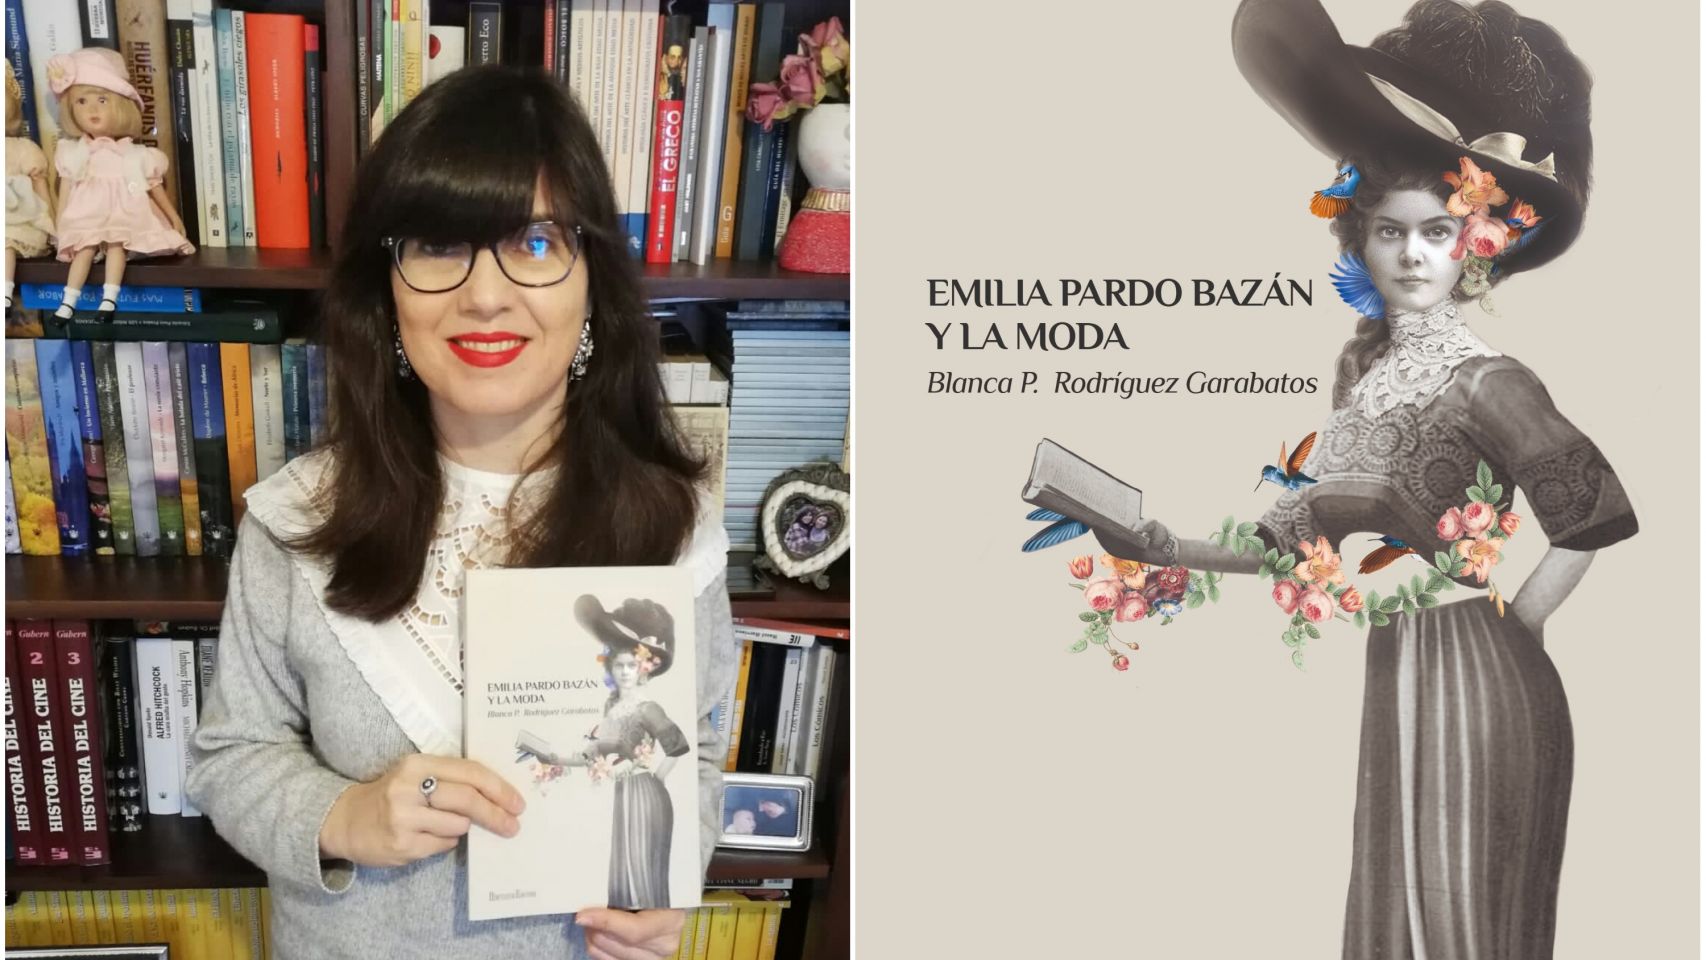 Autora y portada del libro 'Emilia Pardo Bazán y la moda'